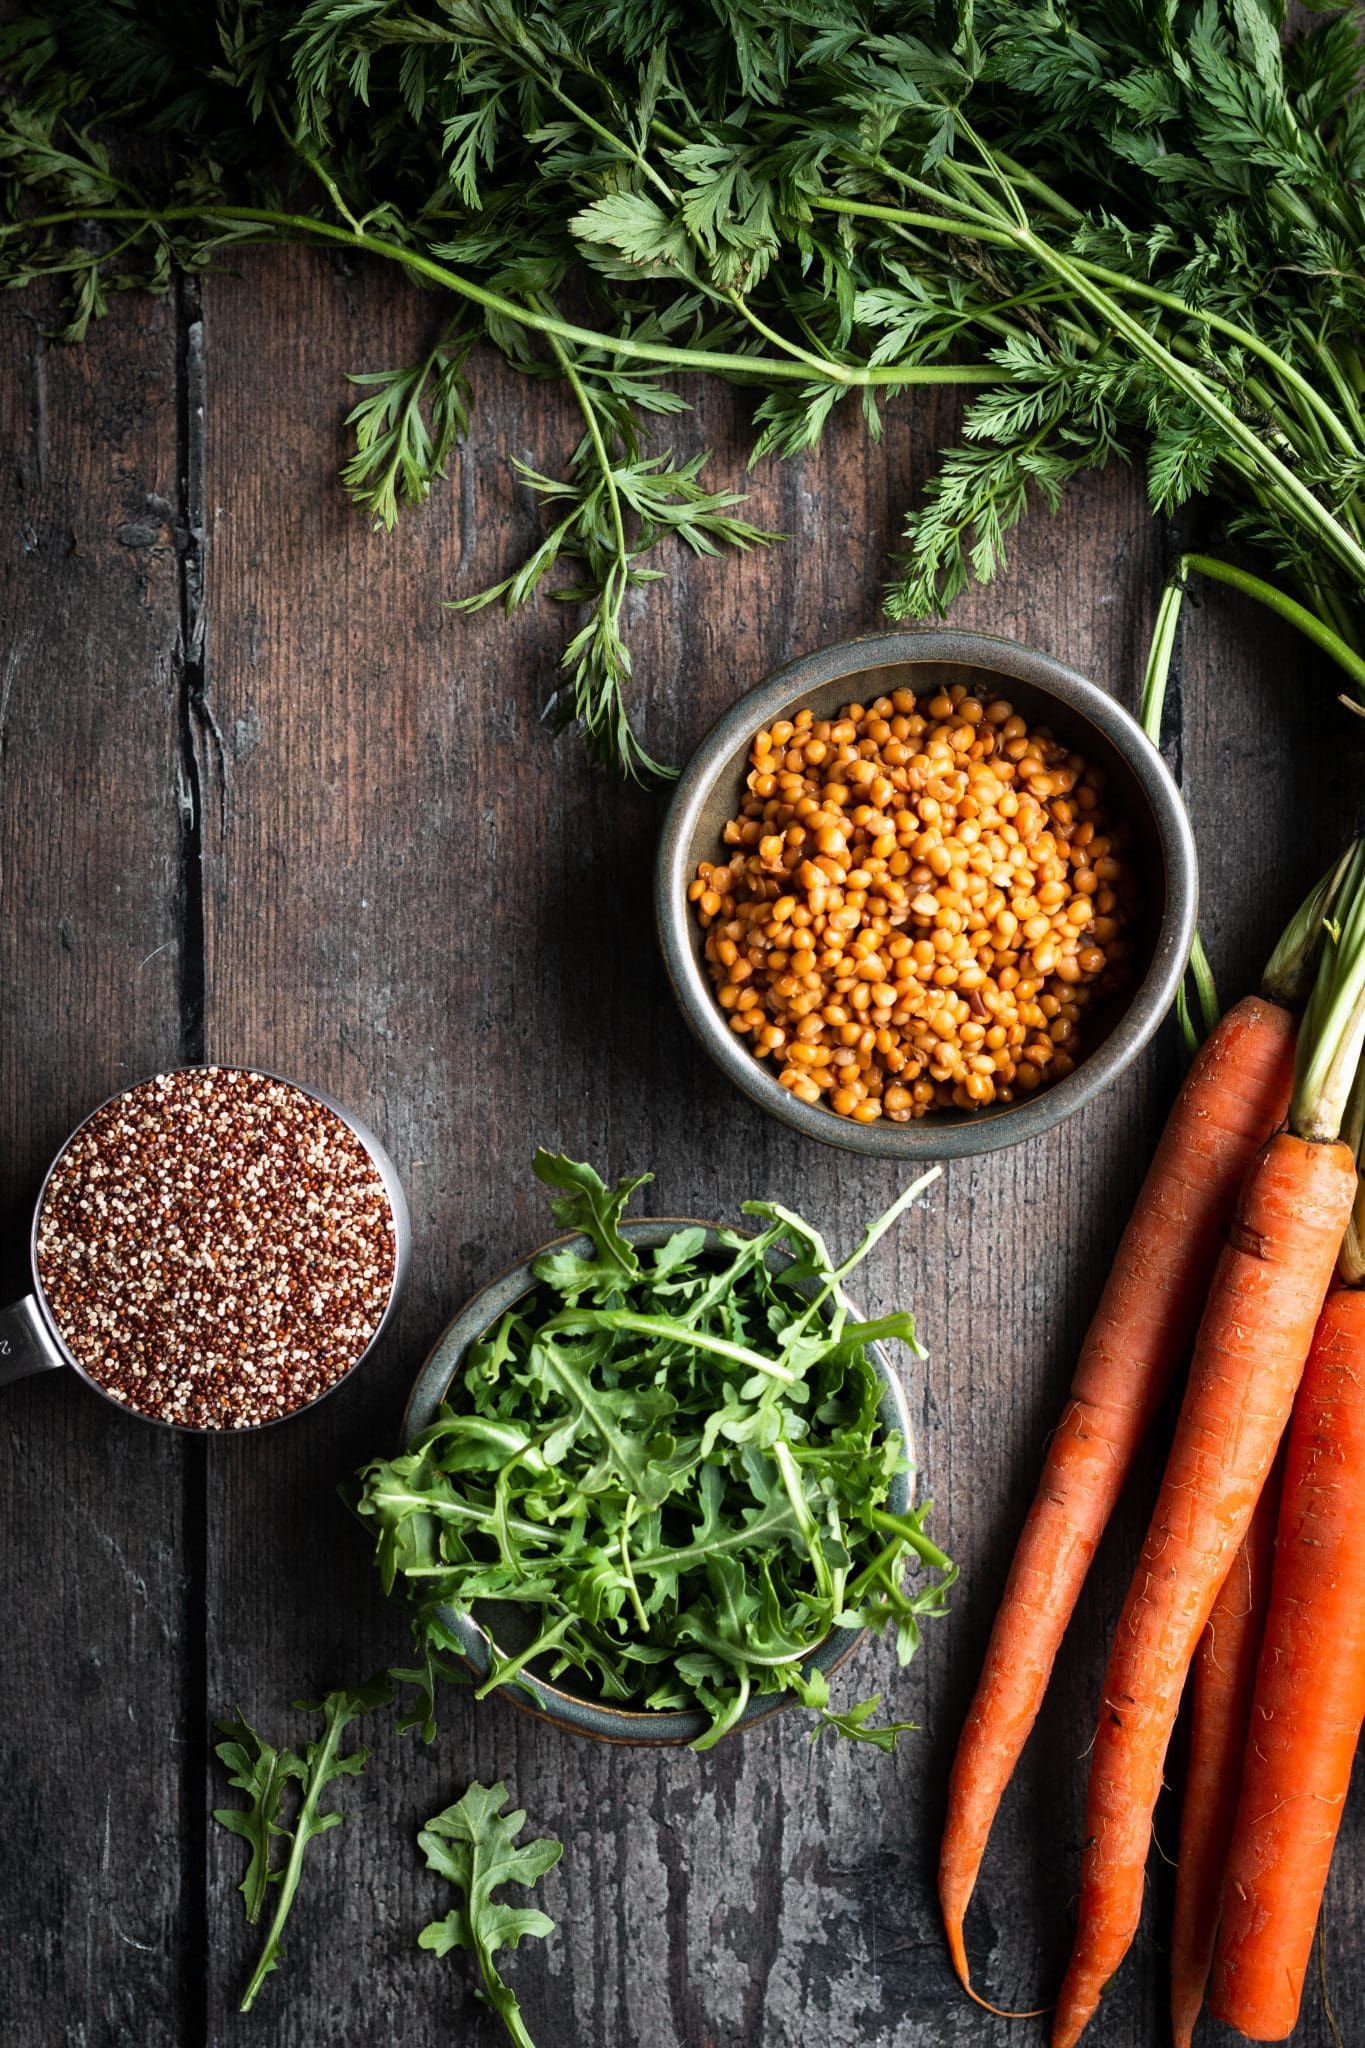 arugula, carrots, lentils and quinoa